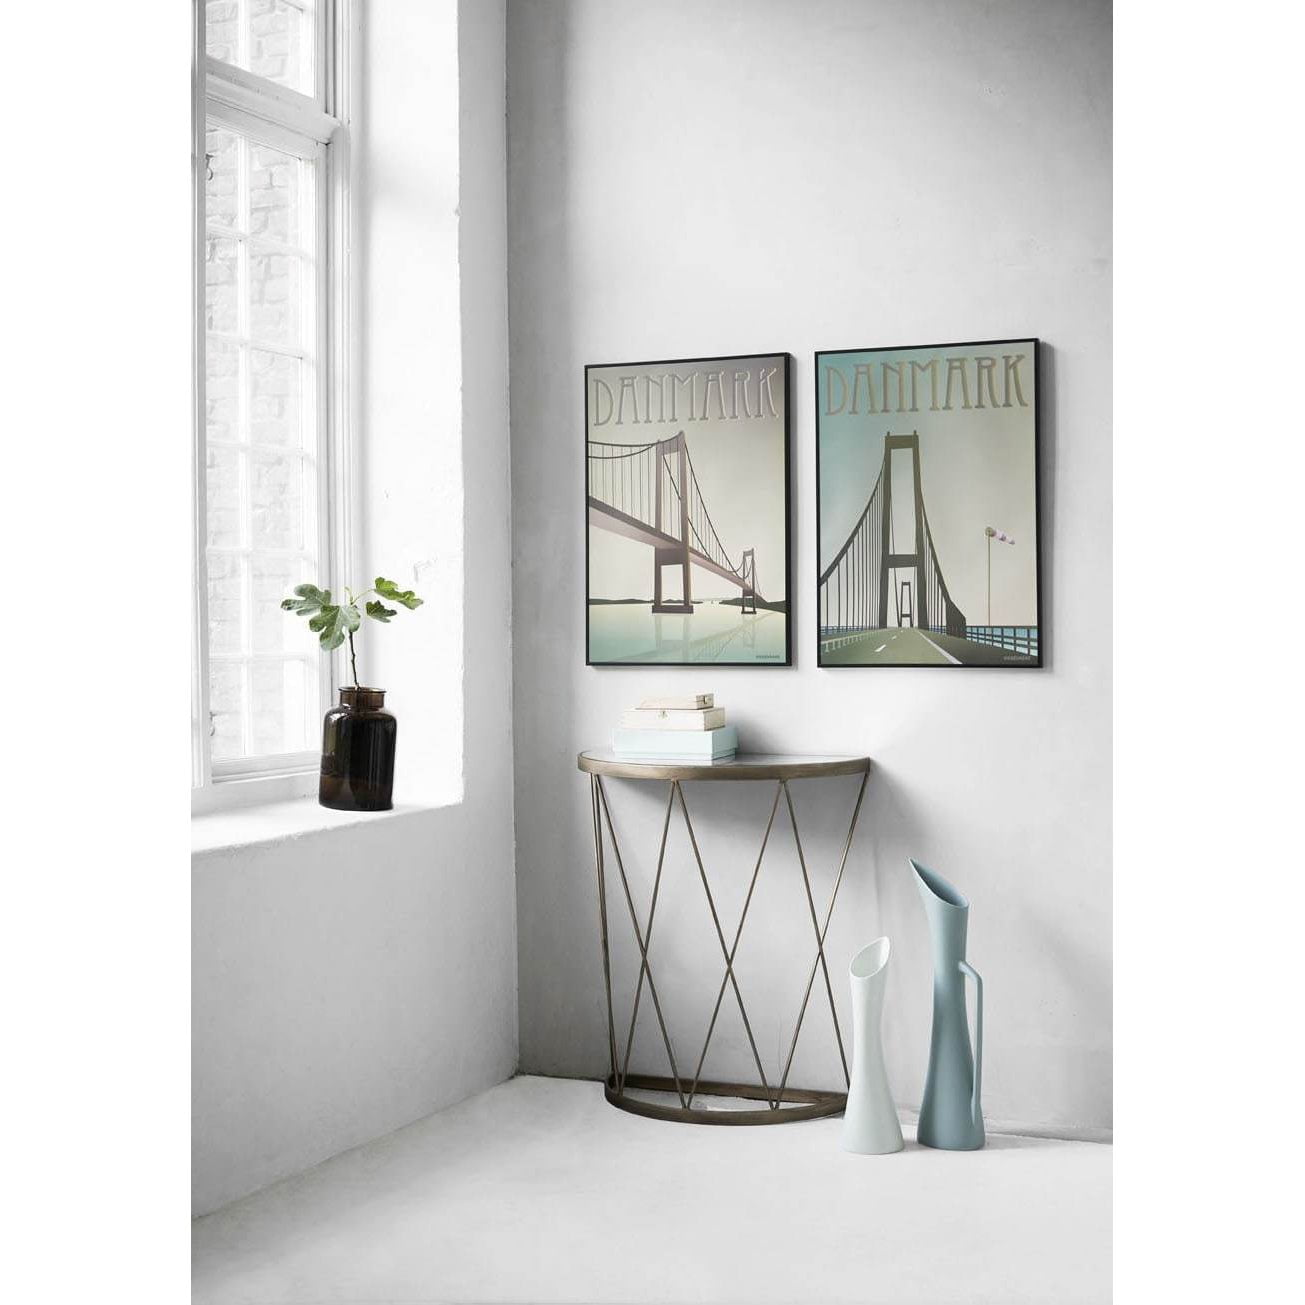 Vissevasse Denmark Storebælts Bridge Plakat, 15 x21 cm